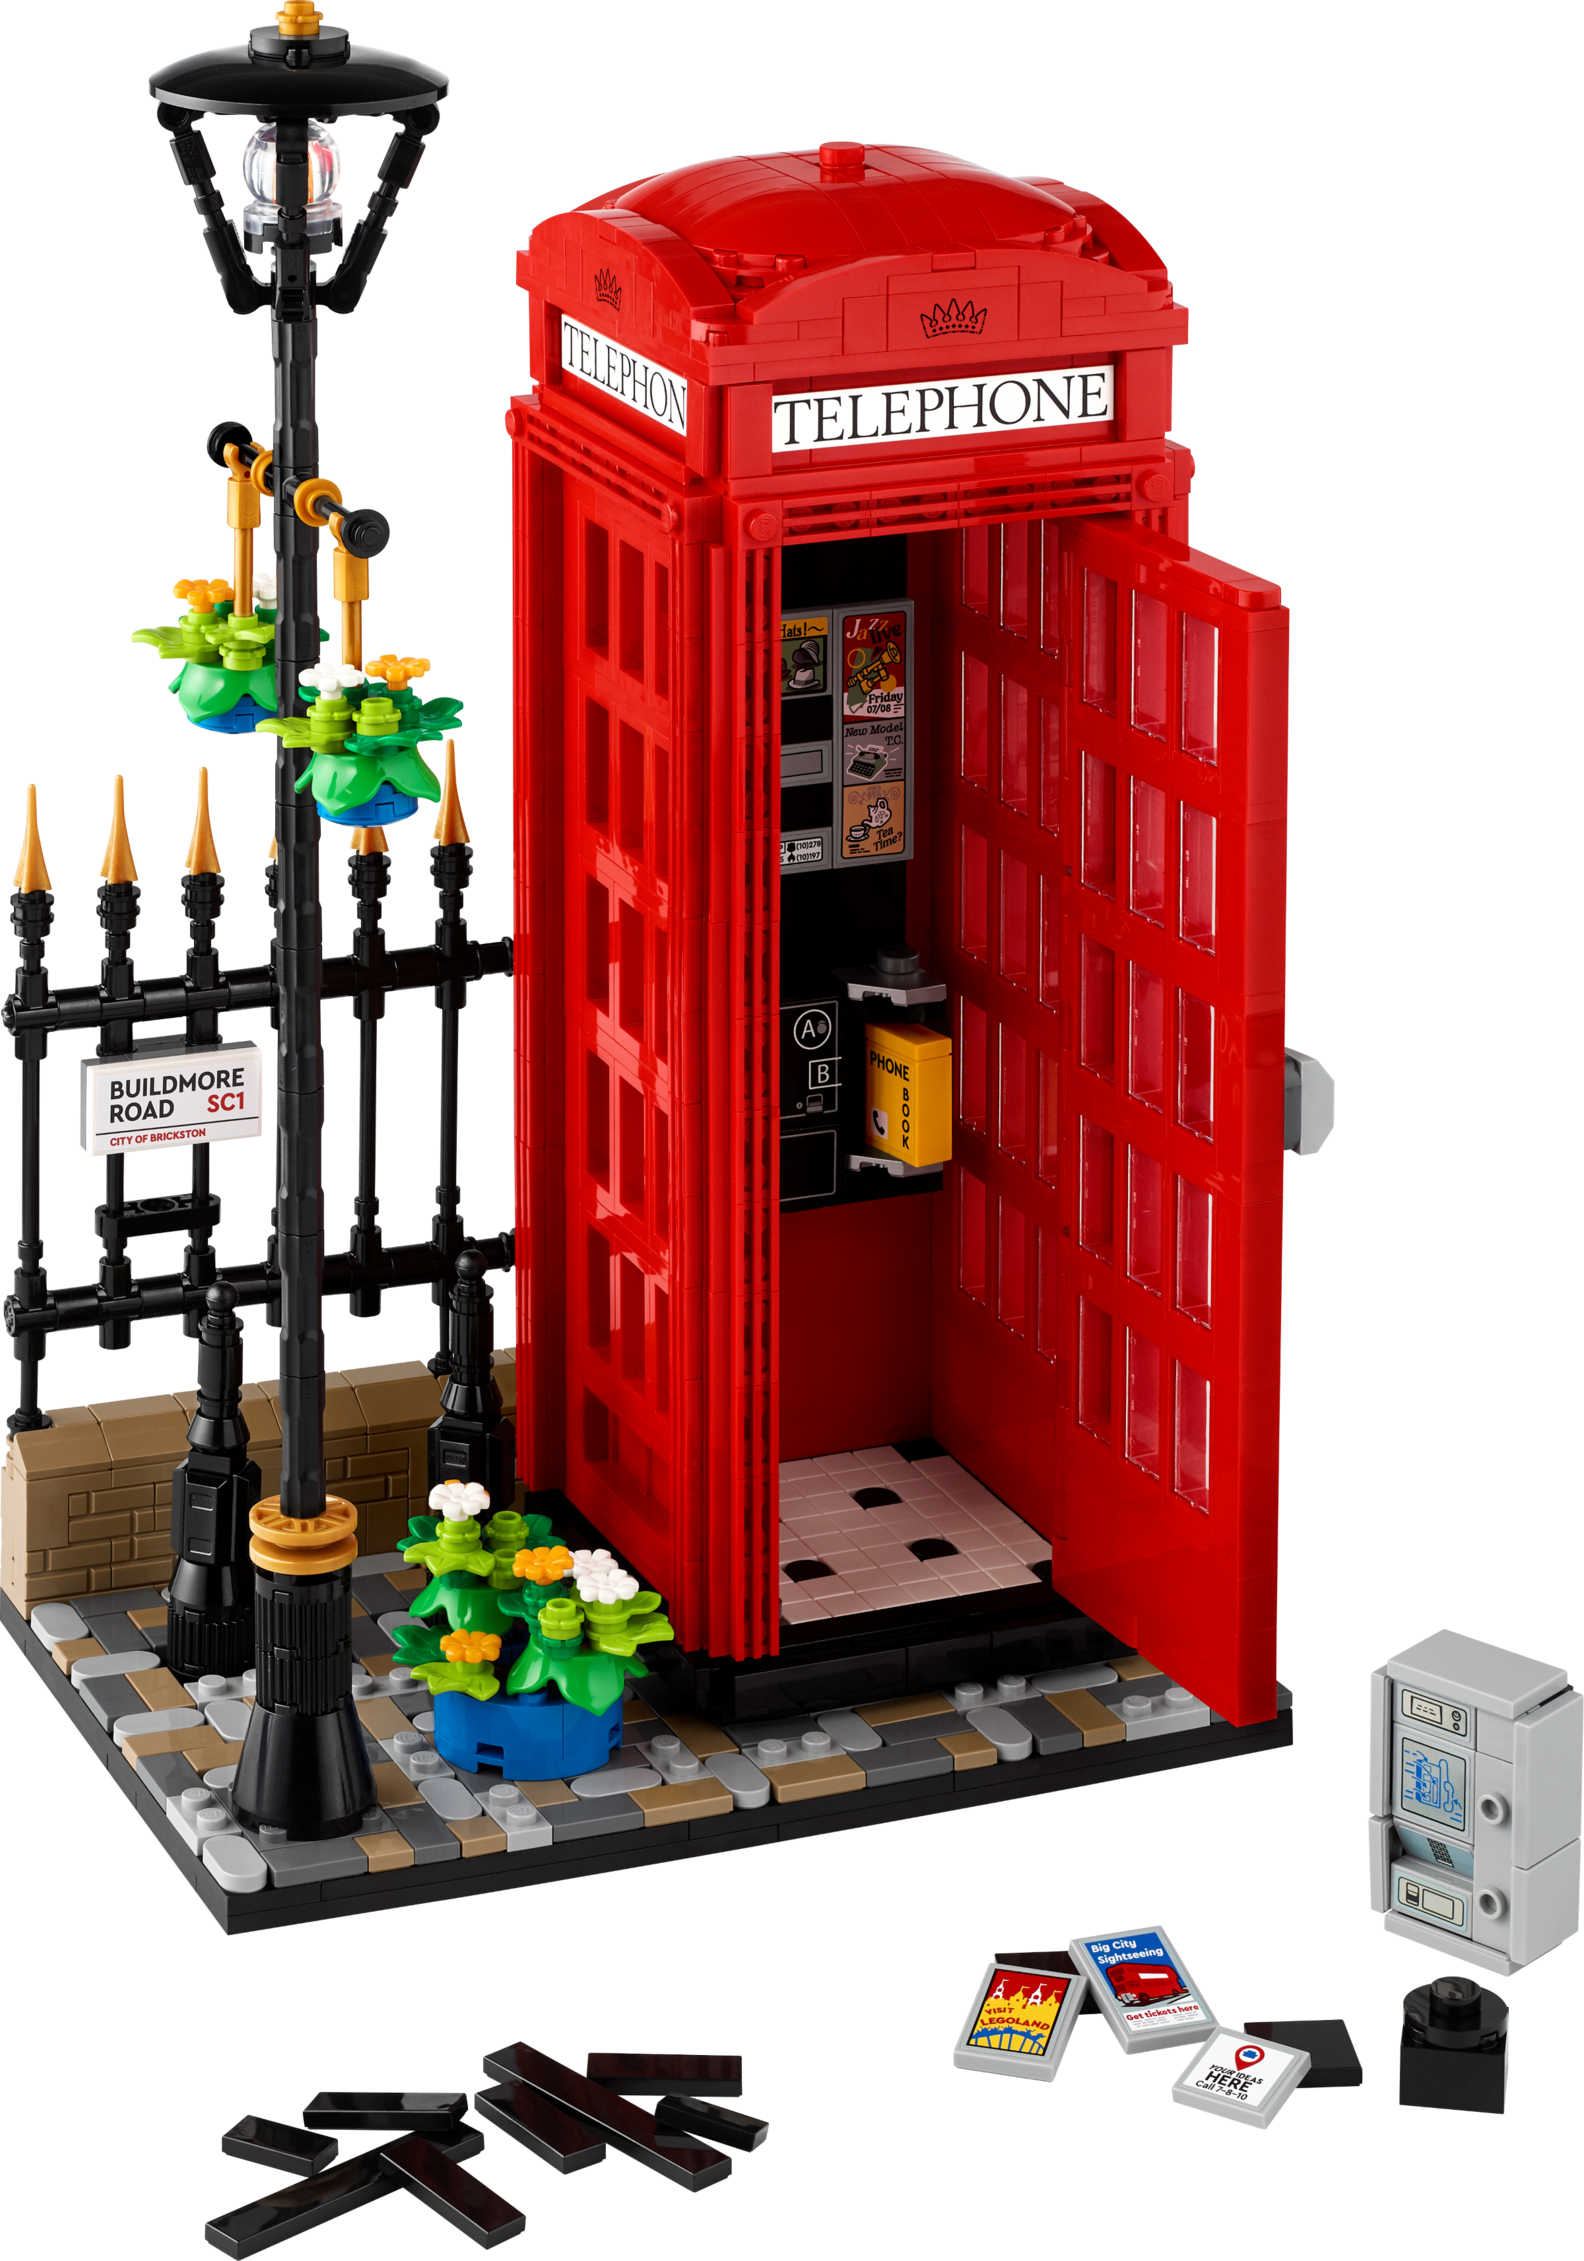 Tilbud: Rød telefonkiosk i London kr 1529,9 på Lego